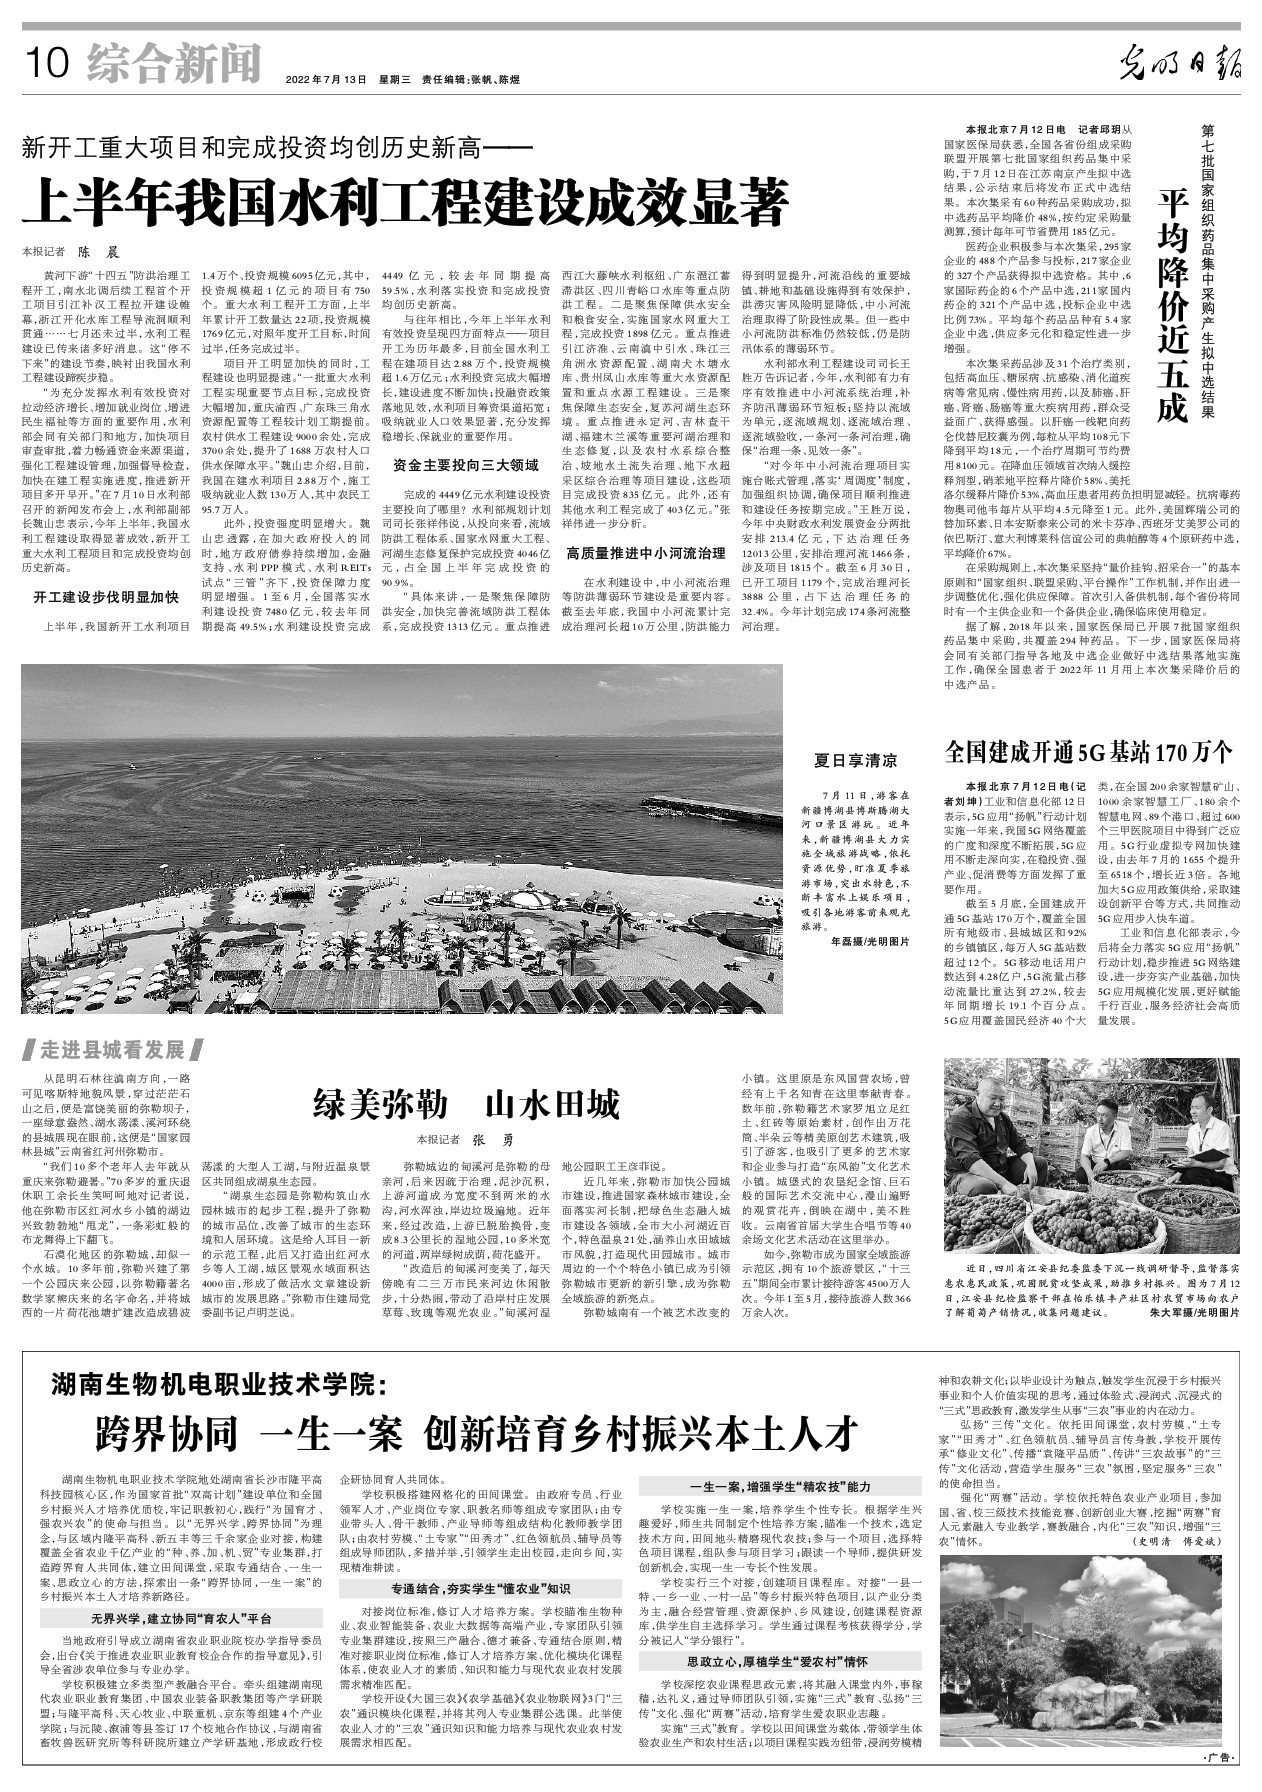 《光明日报》关注云南：绿美弥勒 山水田城